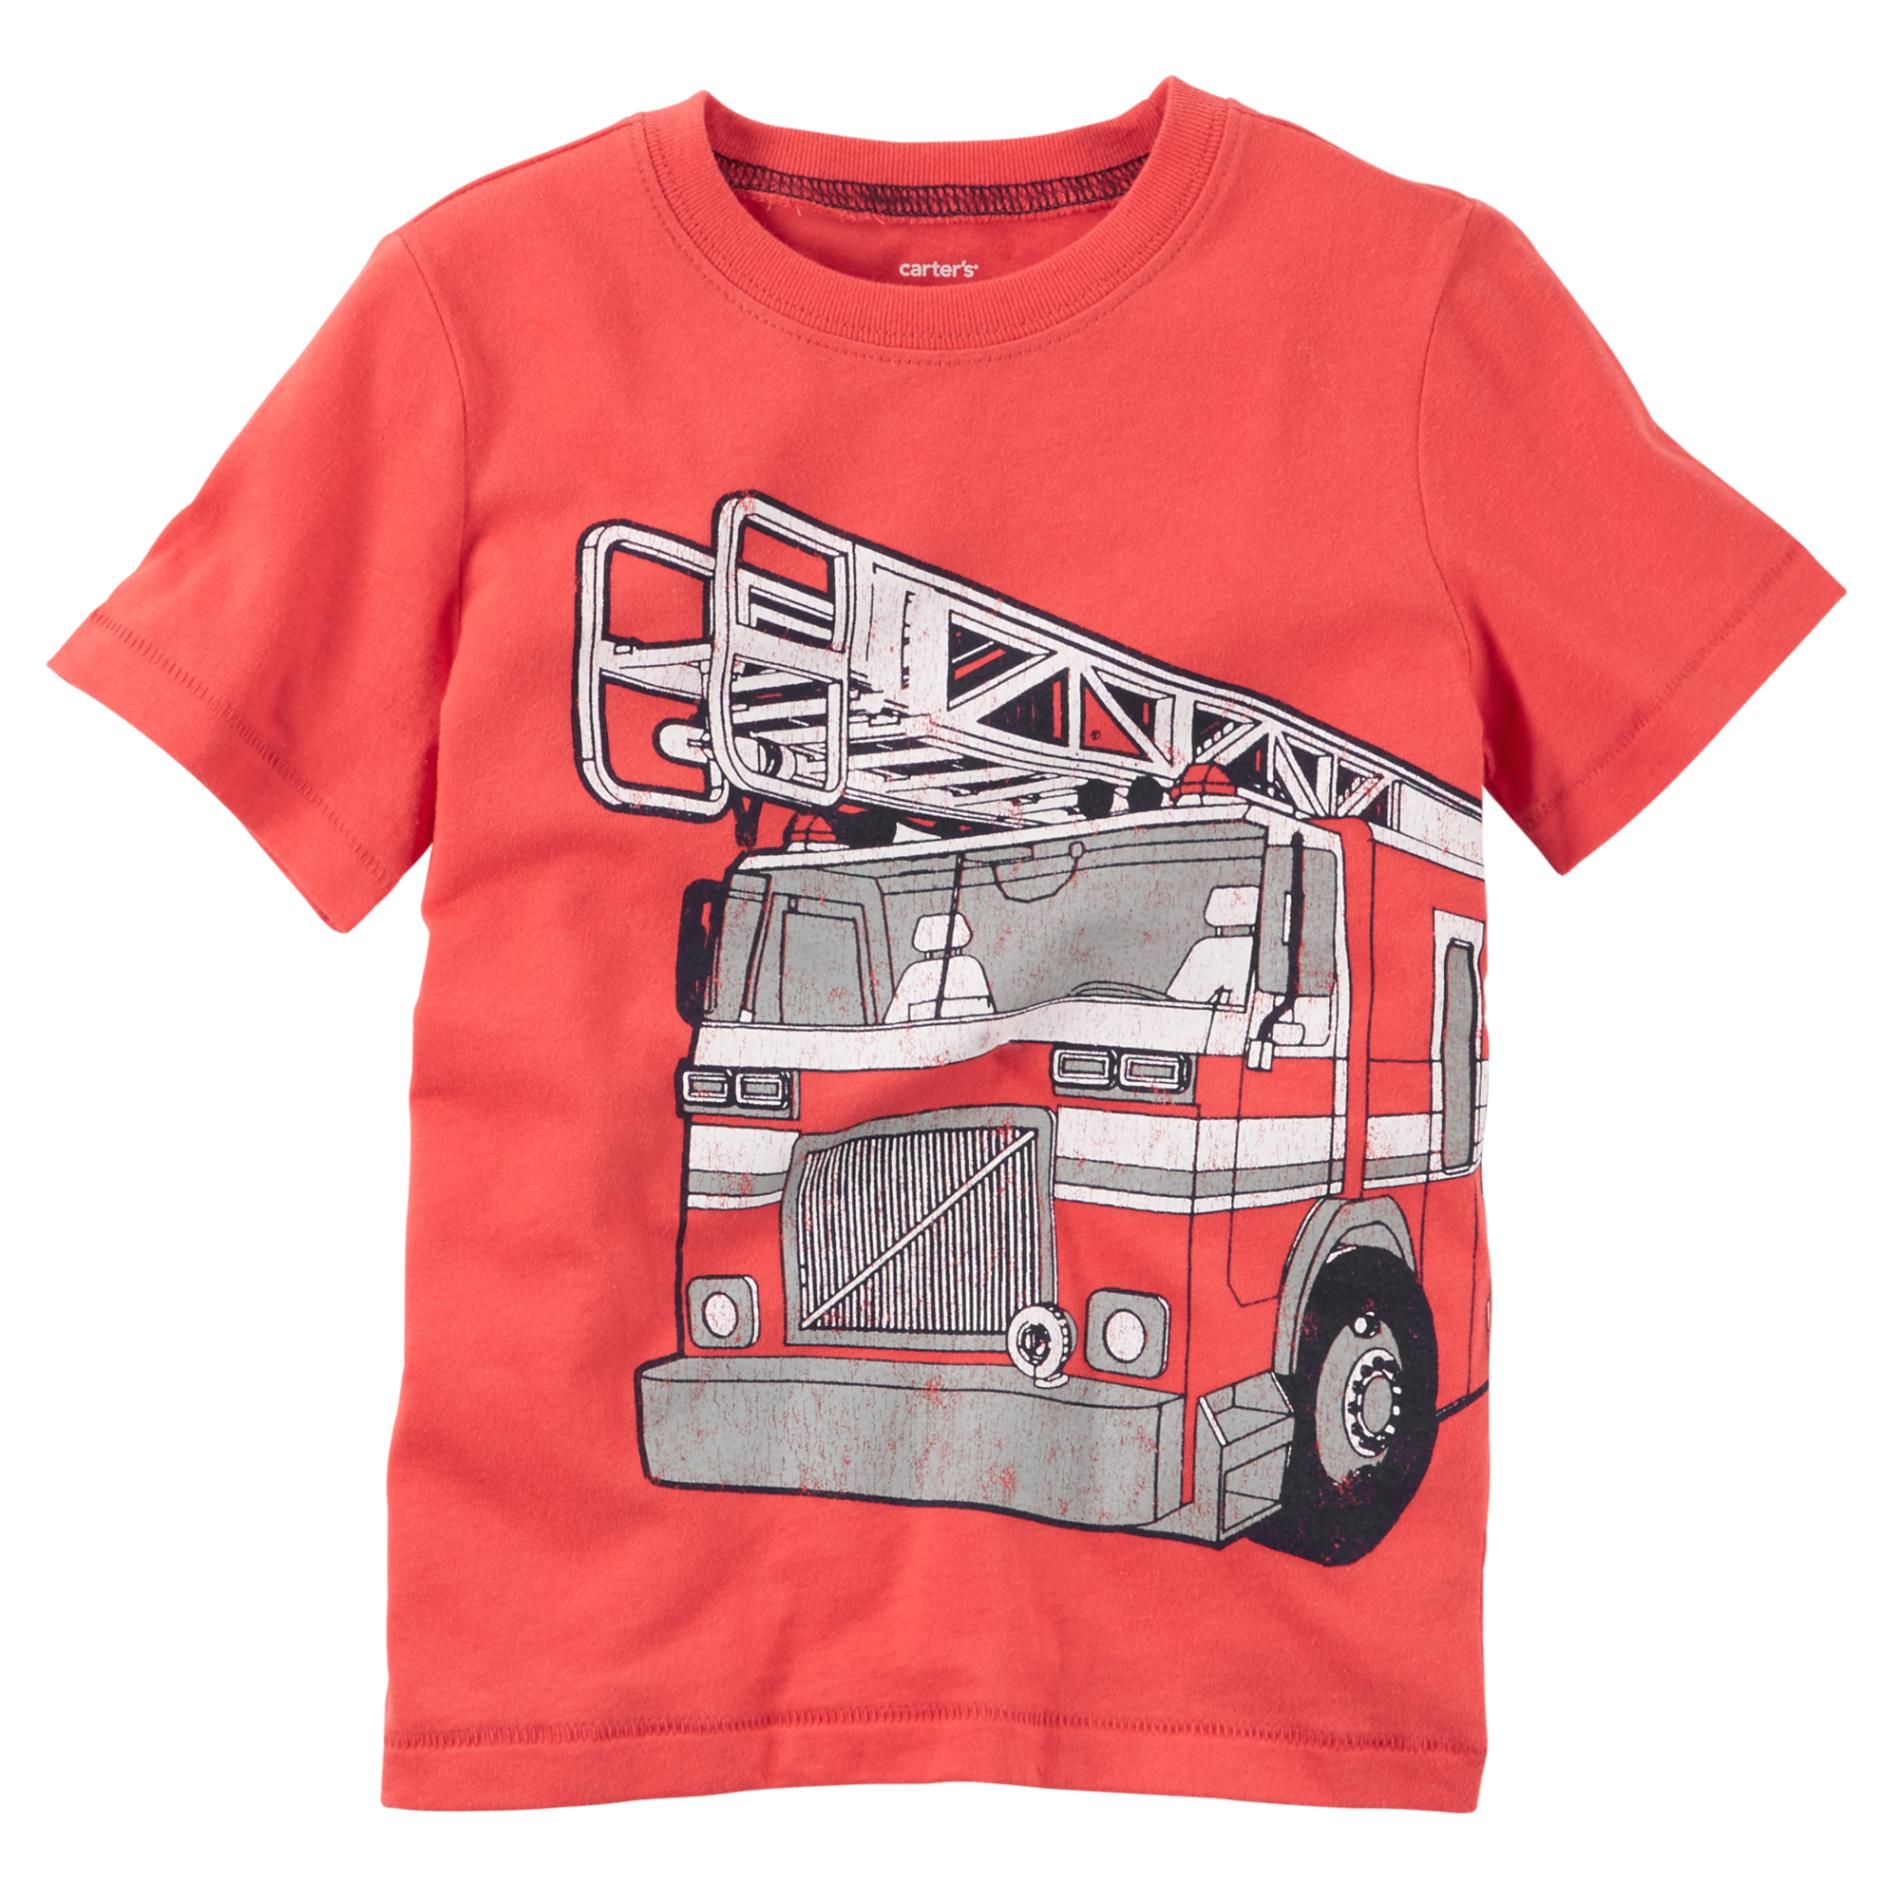 Carter's Toddler Boy's Graphic T-Shirt  - Firetruck